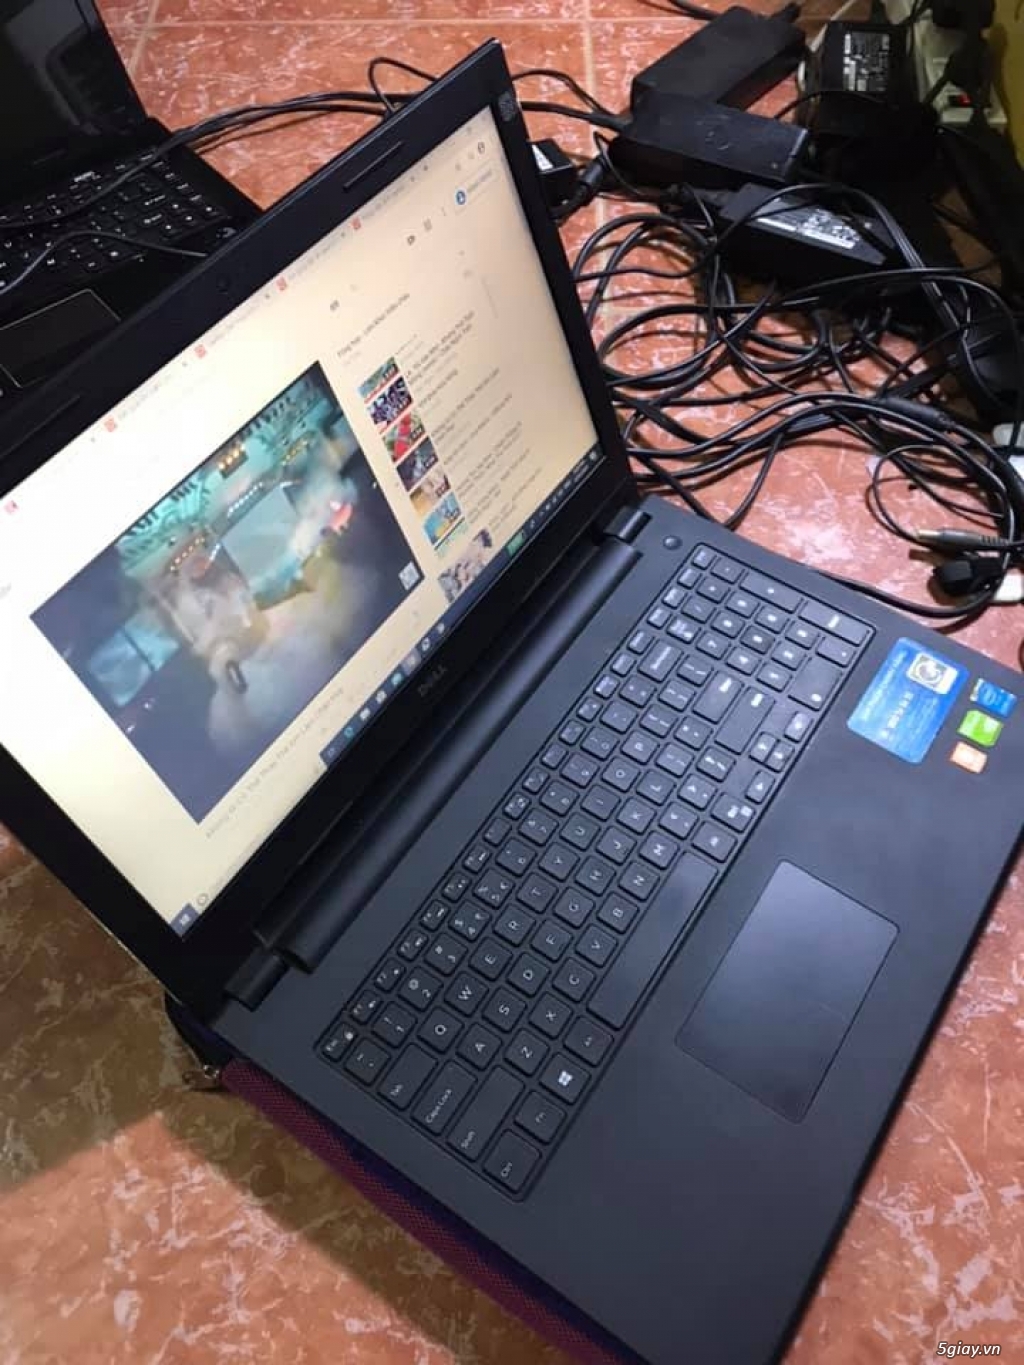 Laptop văn phòng từ 1.5tr, thu xác laptop linh kiện, wifi ac 7260, cho thuê laptop, usb cài win 10 - 5